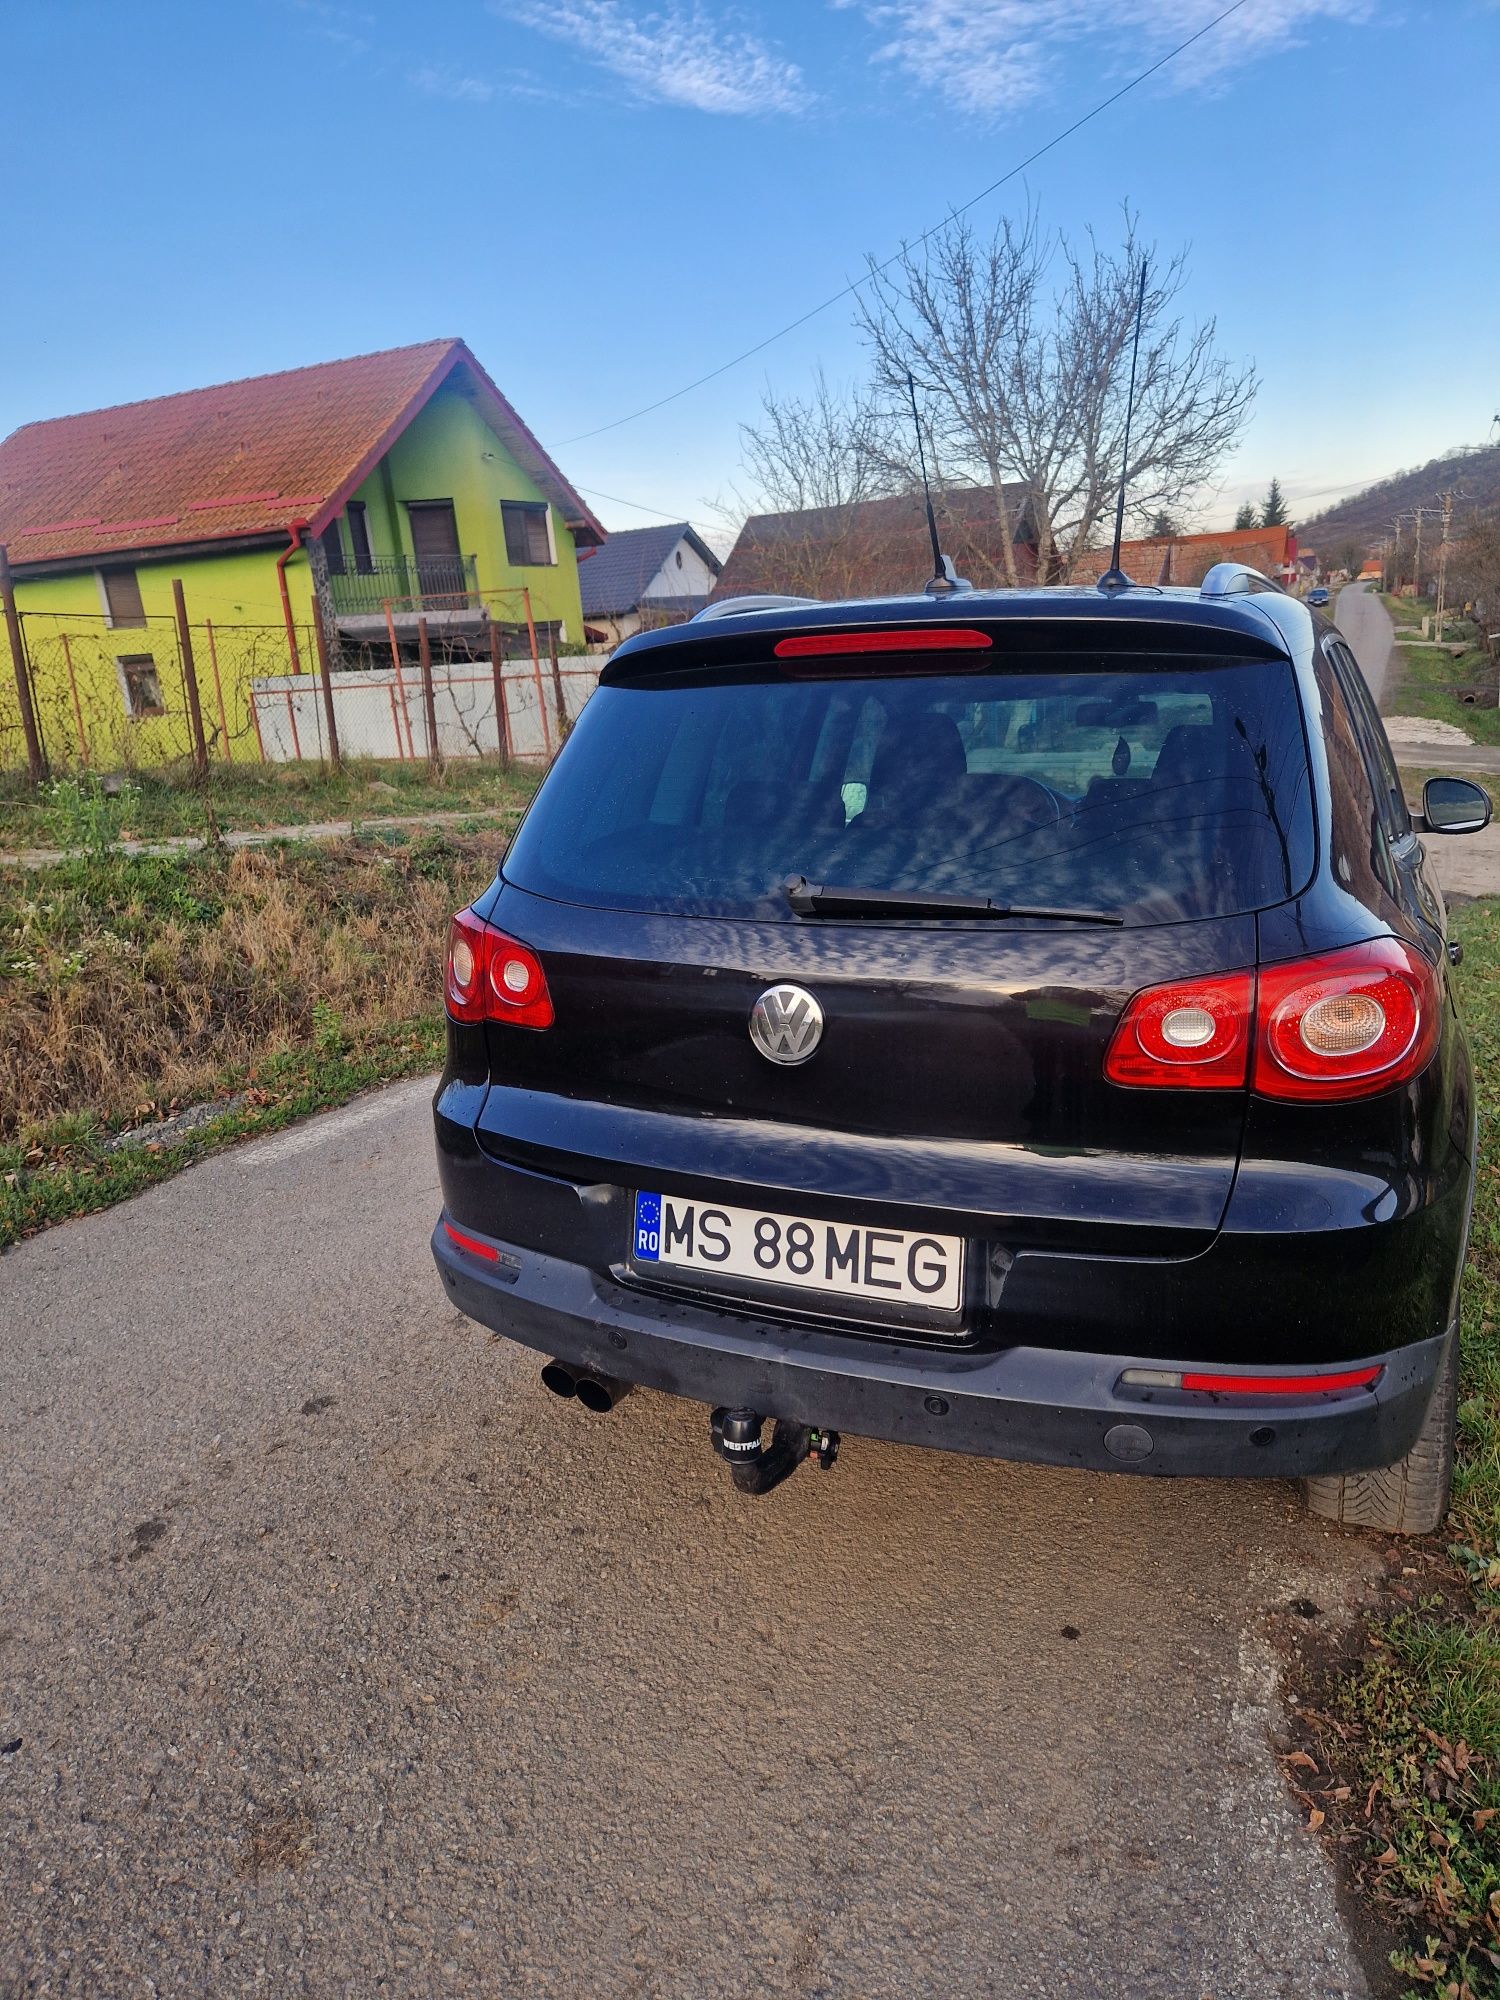 Vând Volkswagen Tiguan - Schimb cu dubă sau miniexcavtor, preț FiX